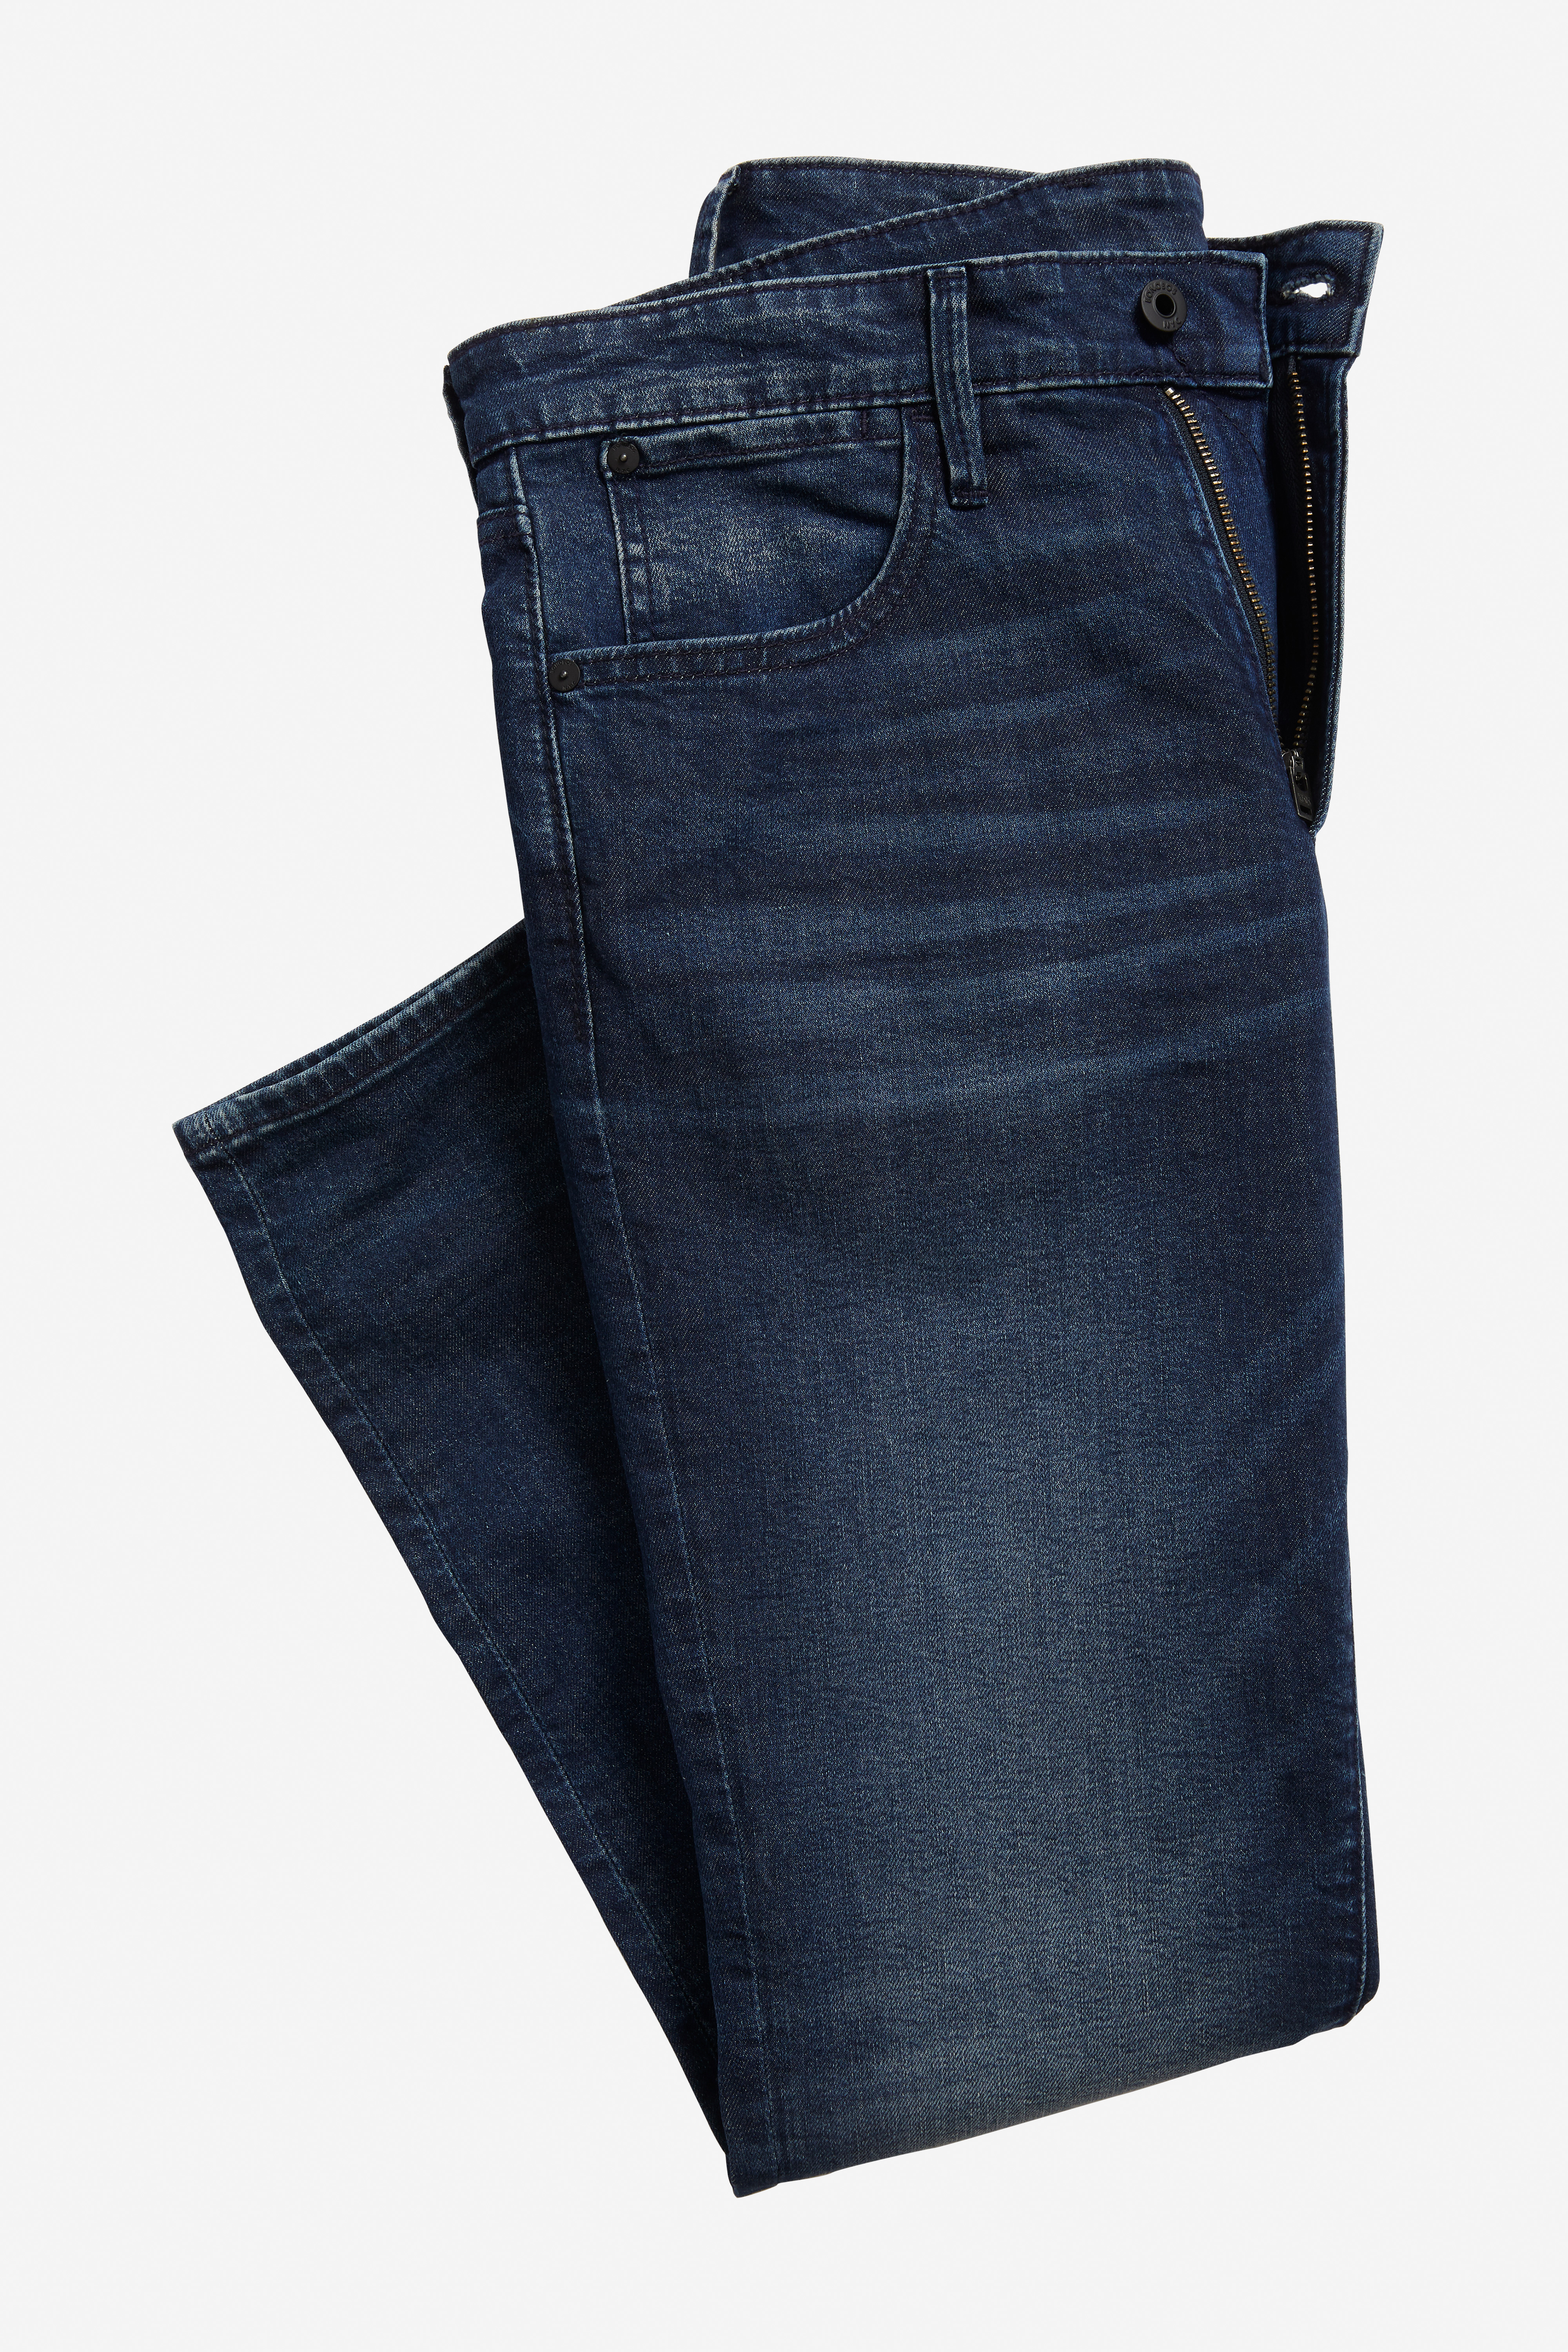 Men's Premium Stretch Denim Jeans